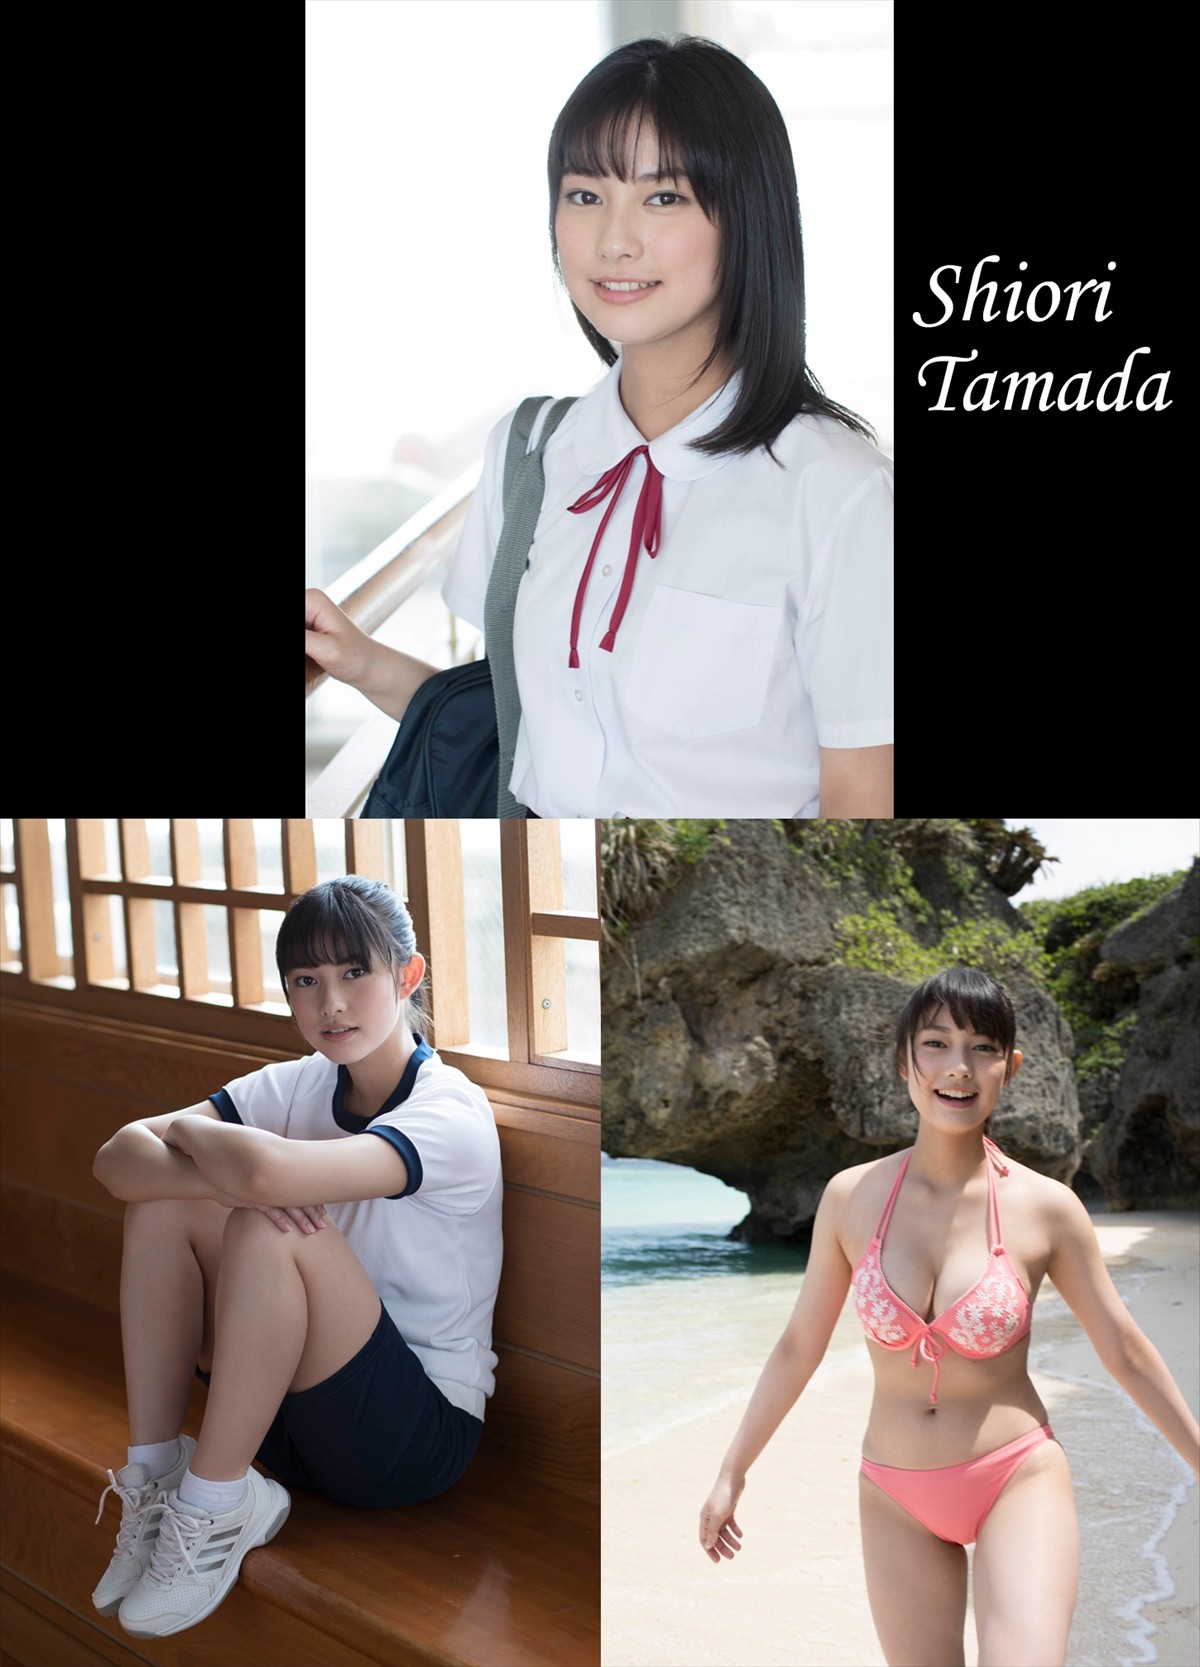 国民的美少女・玉田志織、ファースト写真集で16歳の水着姿披露